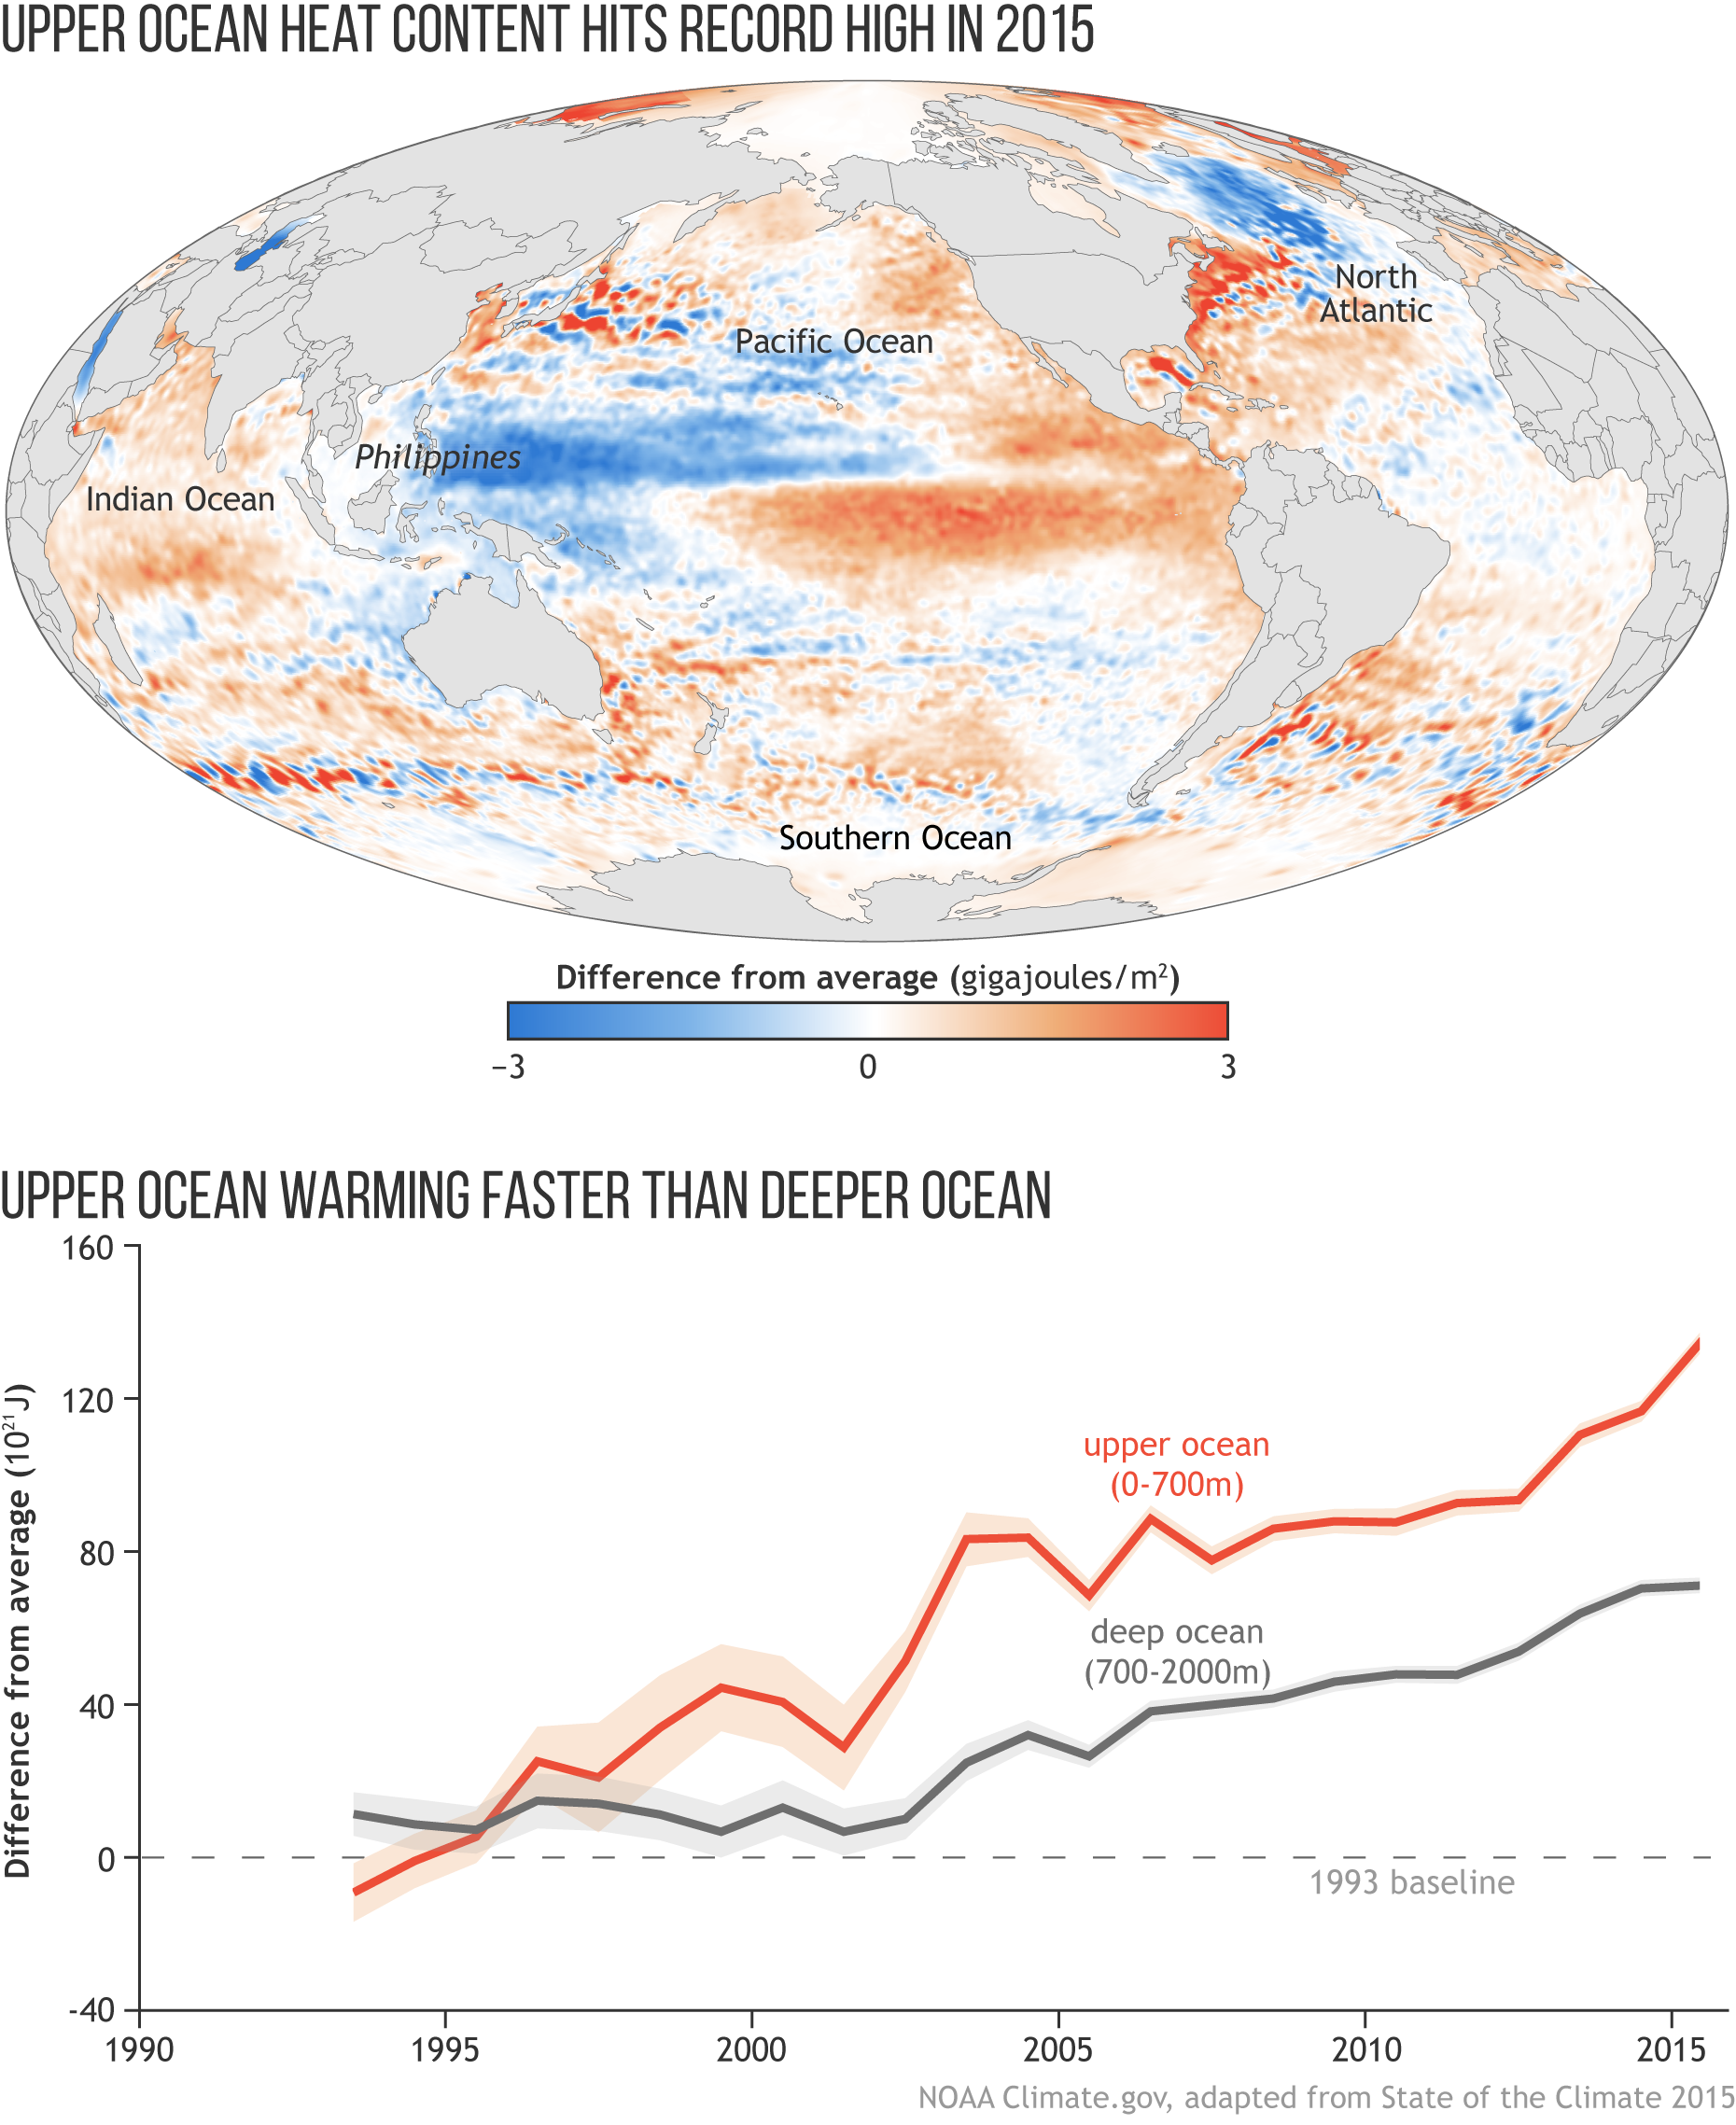 上图:2015年全球海洋上层热含量的地图。阴影表示,海洋热含量低于(蓝色)或以上(橙色/红色)的平均水平。